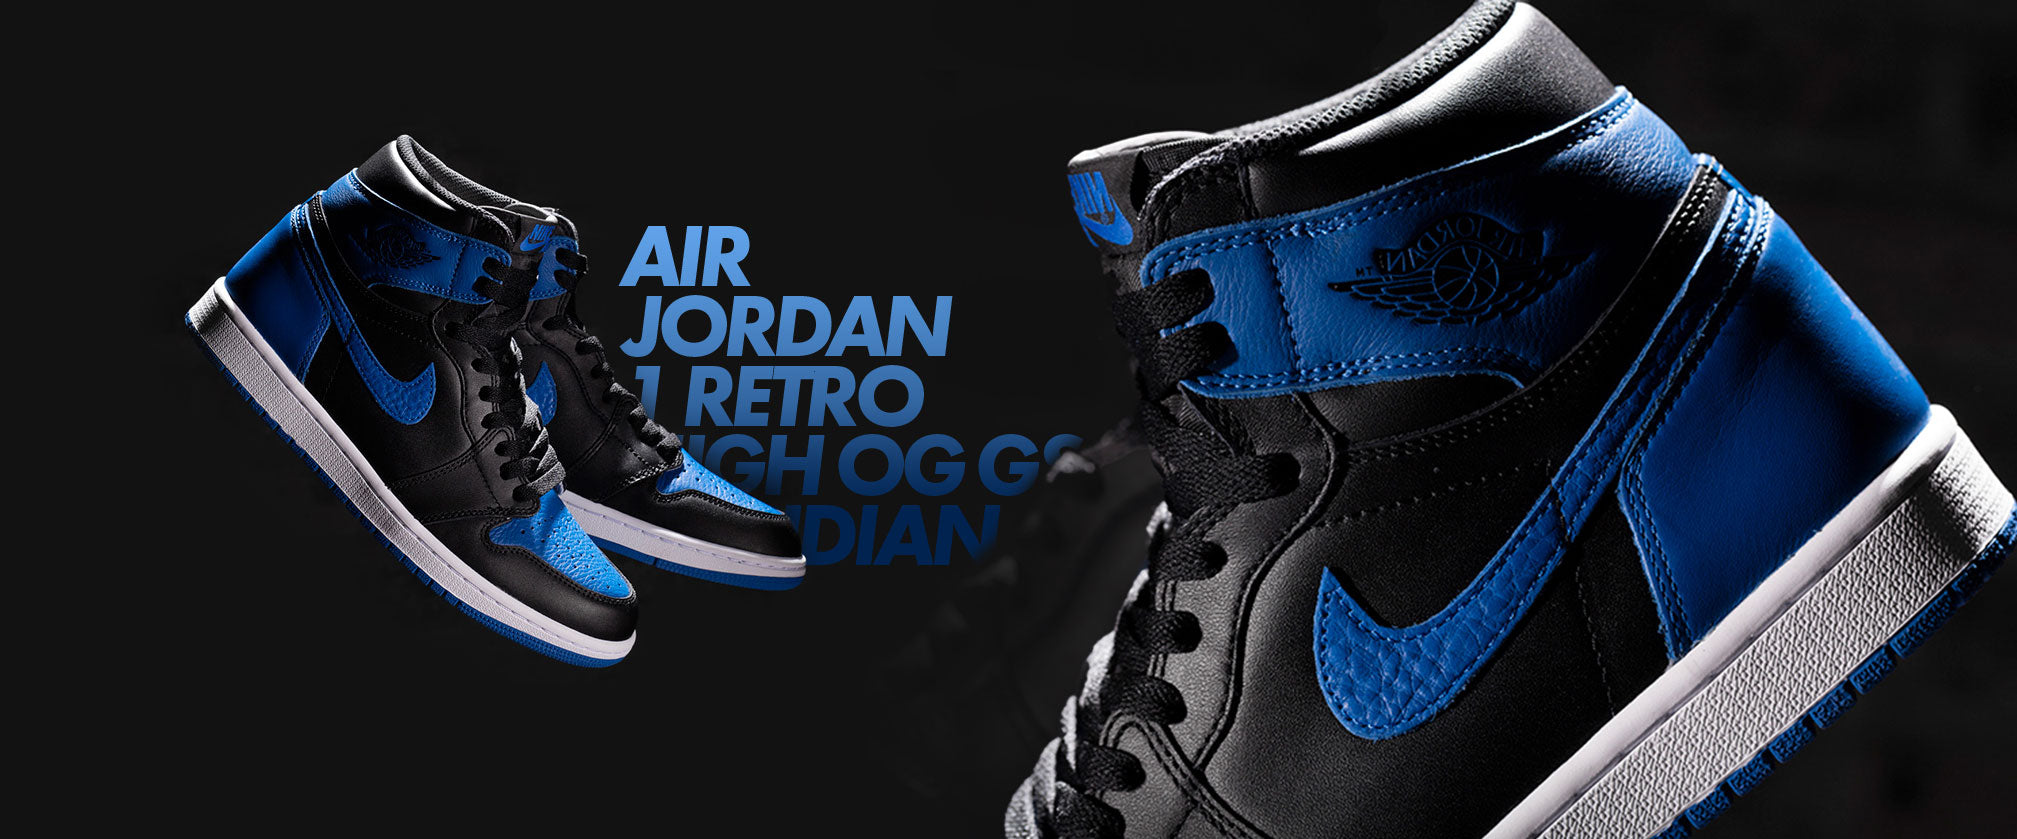 Nike Air Jordan. Original Nike Air Jordan shoes.